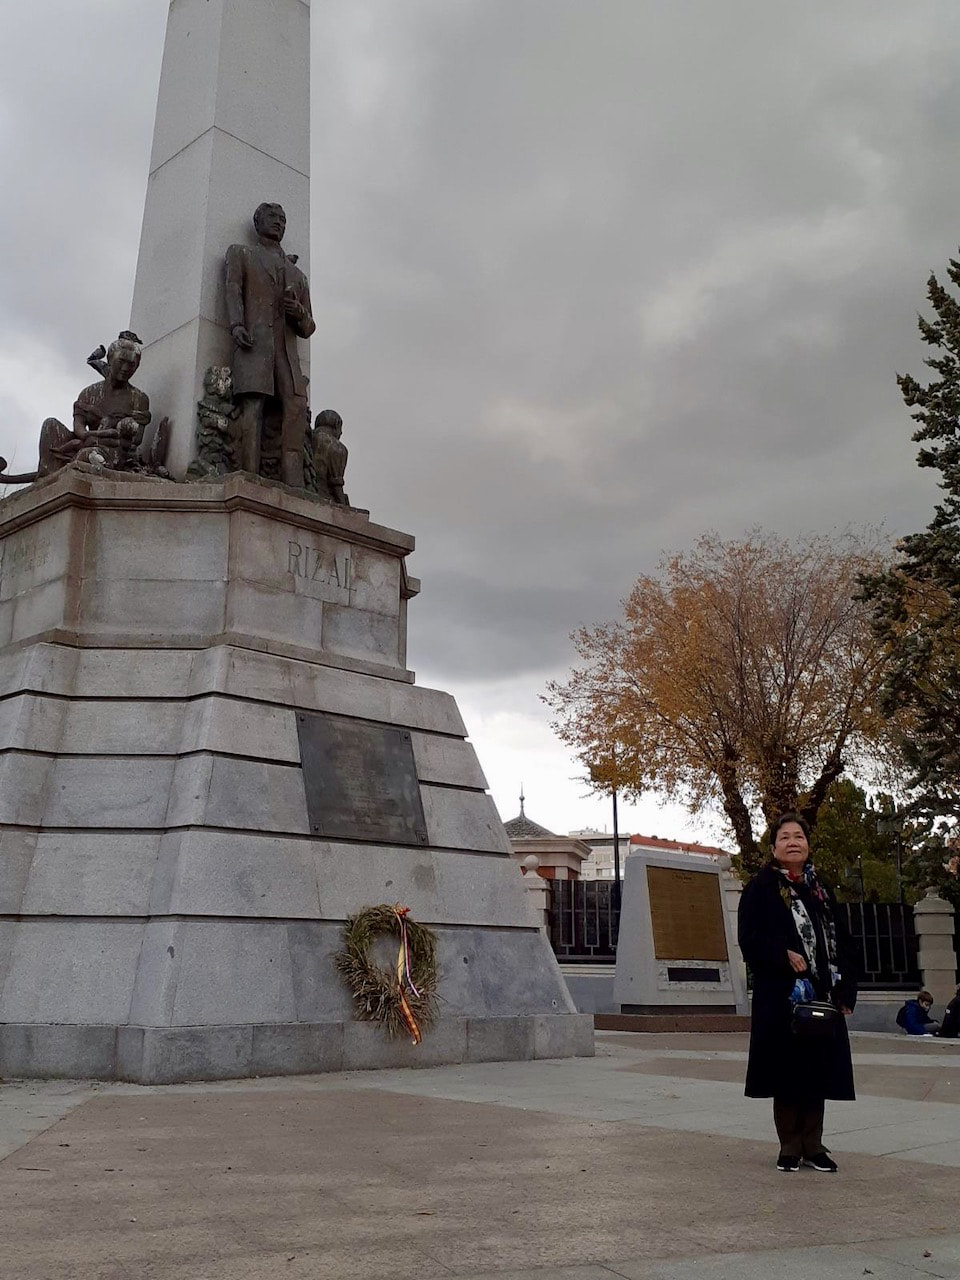 Jose Rizal Statue in Madrid